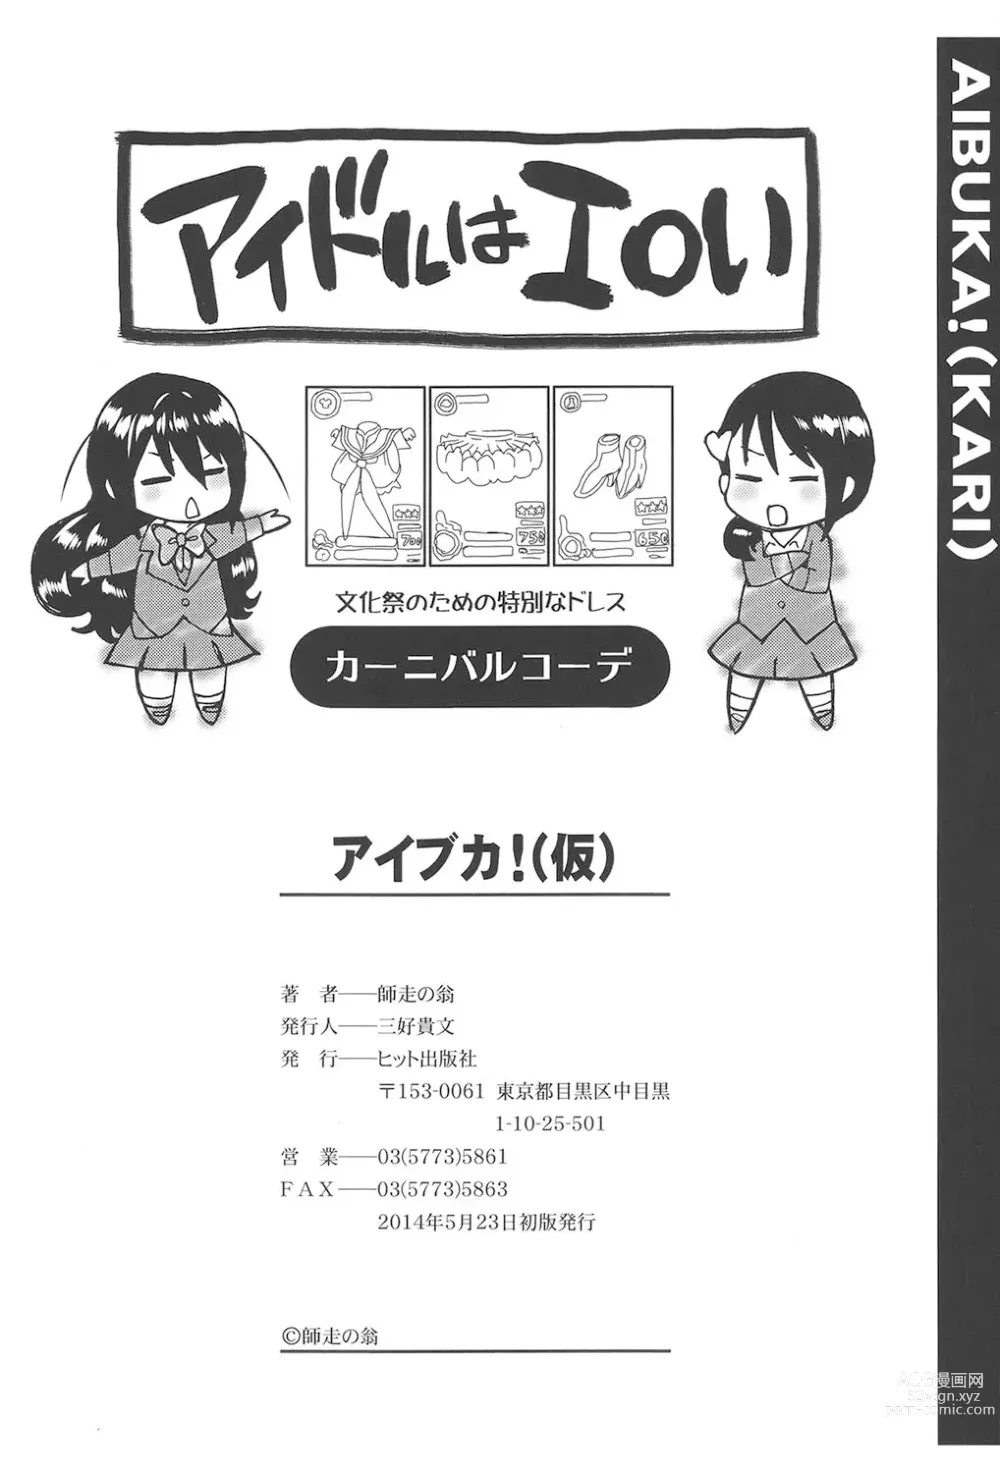 Page 245 of manga Aibuka!